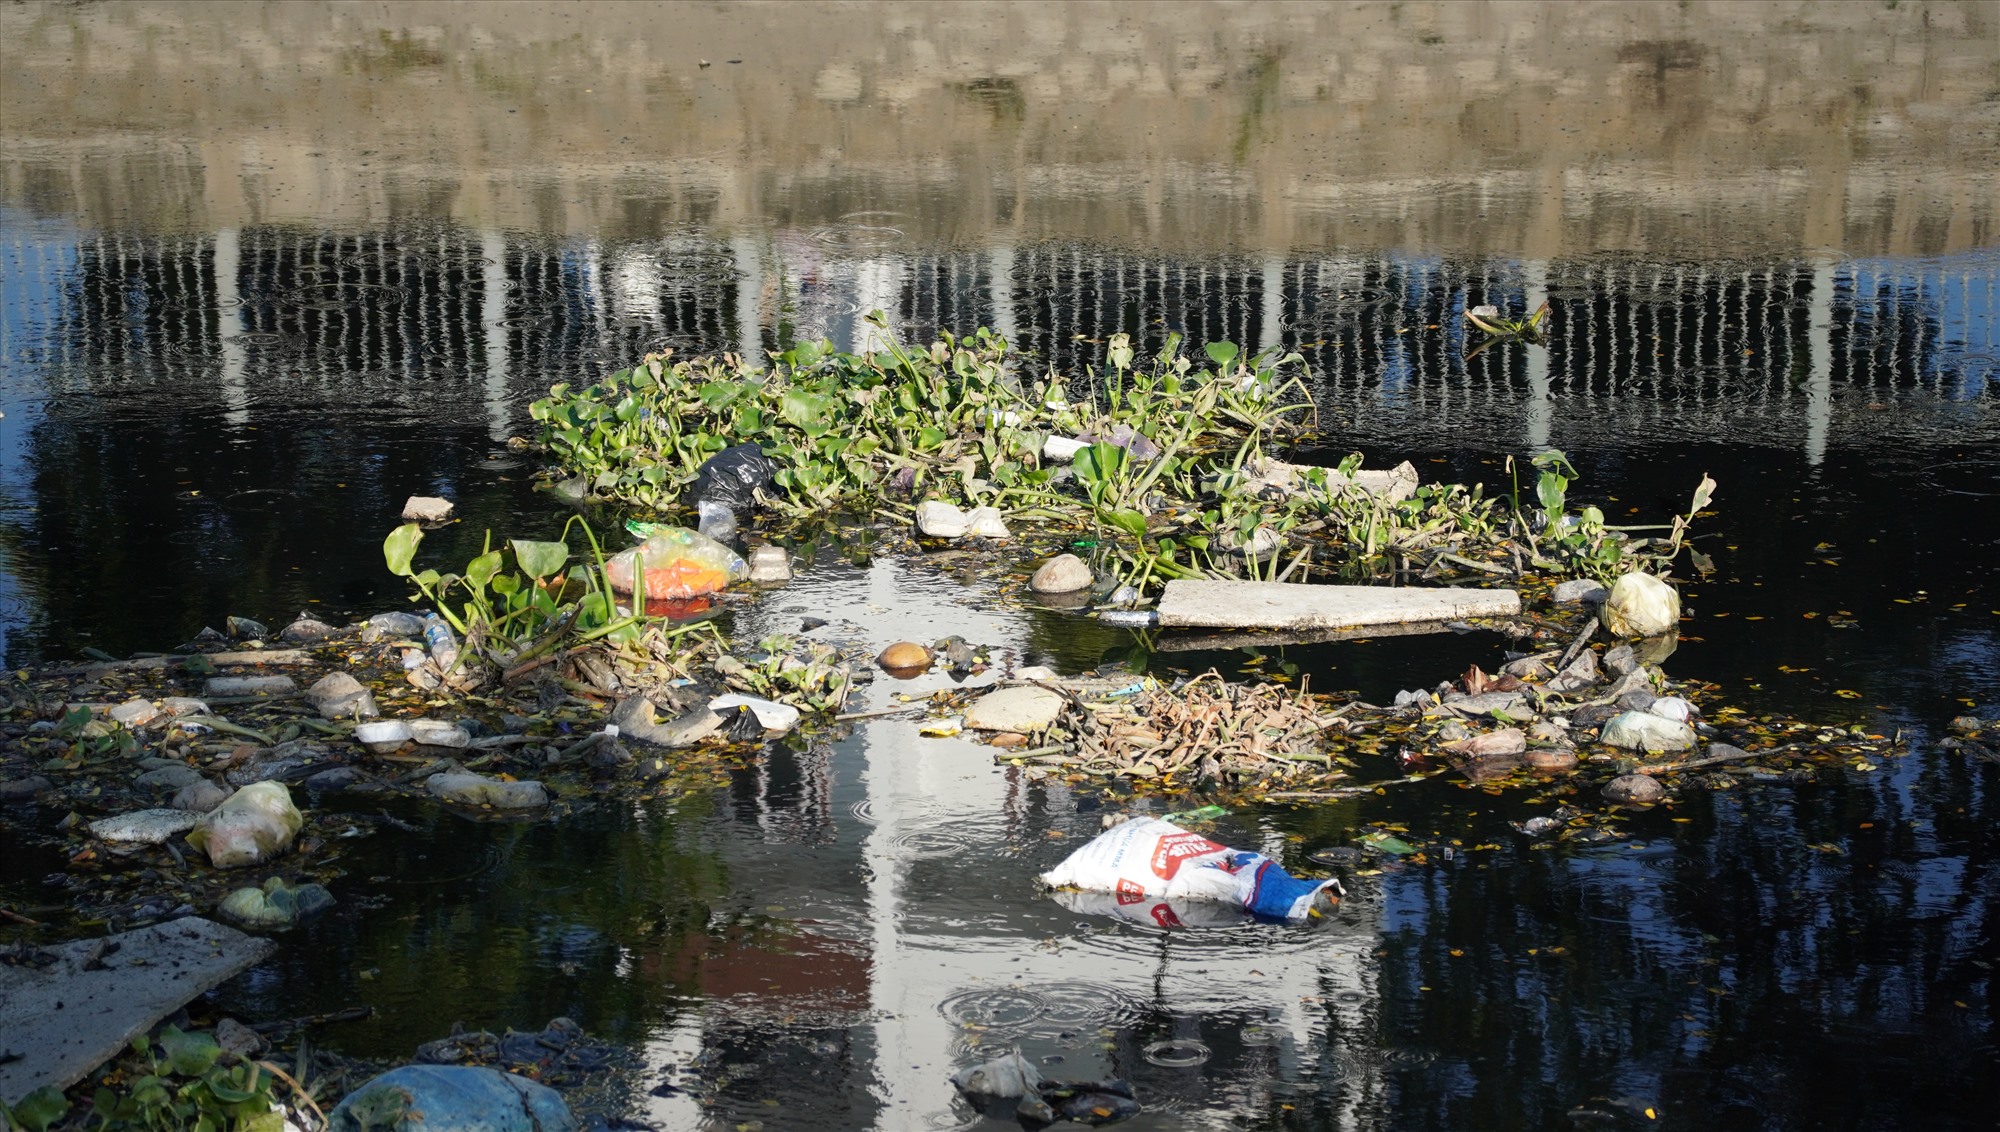 Theo đại diện UBND Quận 6, nhiều hộ dân còn thiếu ý thức bảo vệ môi trường đã xả rác bừa bãi, người từ nơi khác đổ trộm chất thải vào ban đêm xuống kênh. Rác thải khó phân huỷ tích tụ lâu ngày gây ô nhiễm nghiêm trọng.